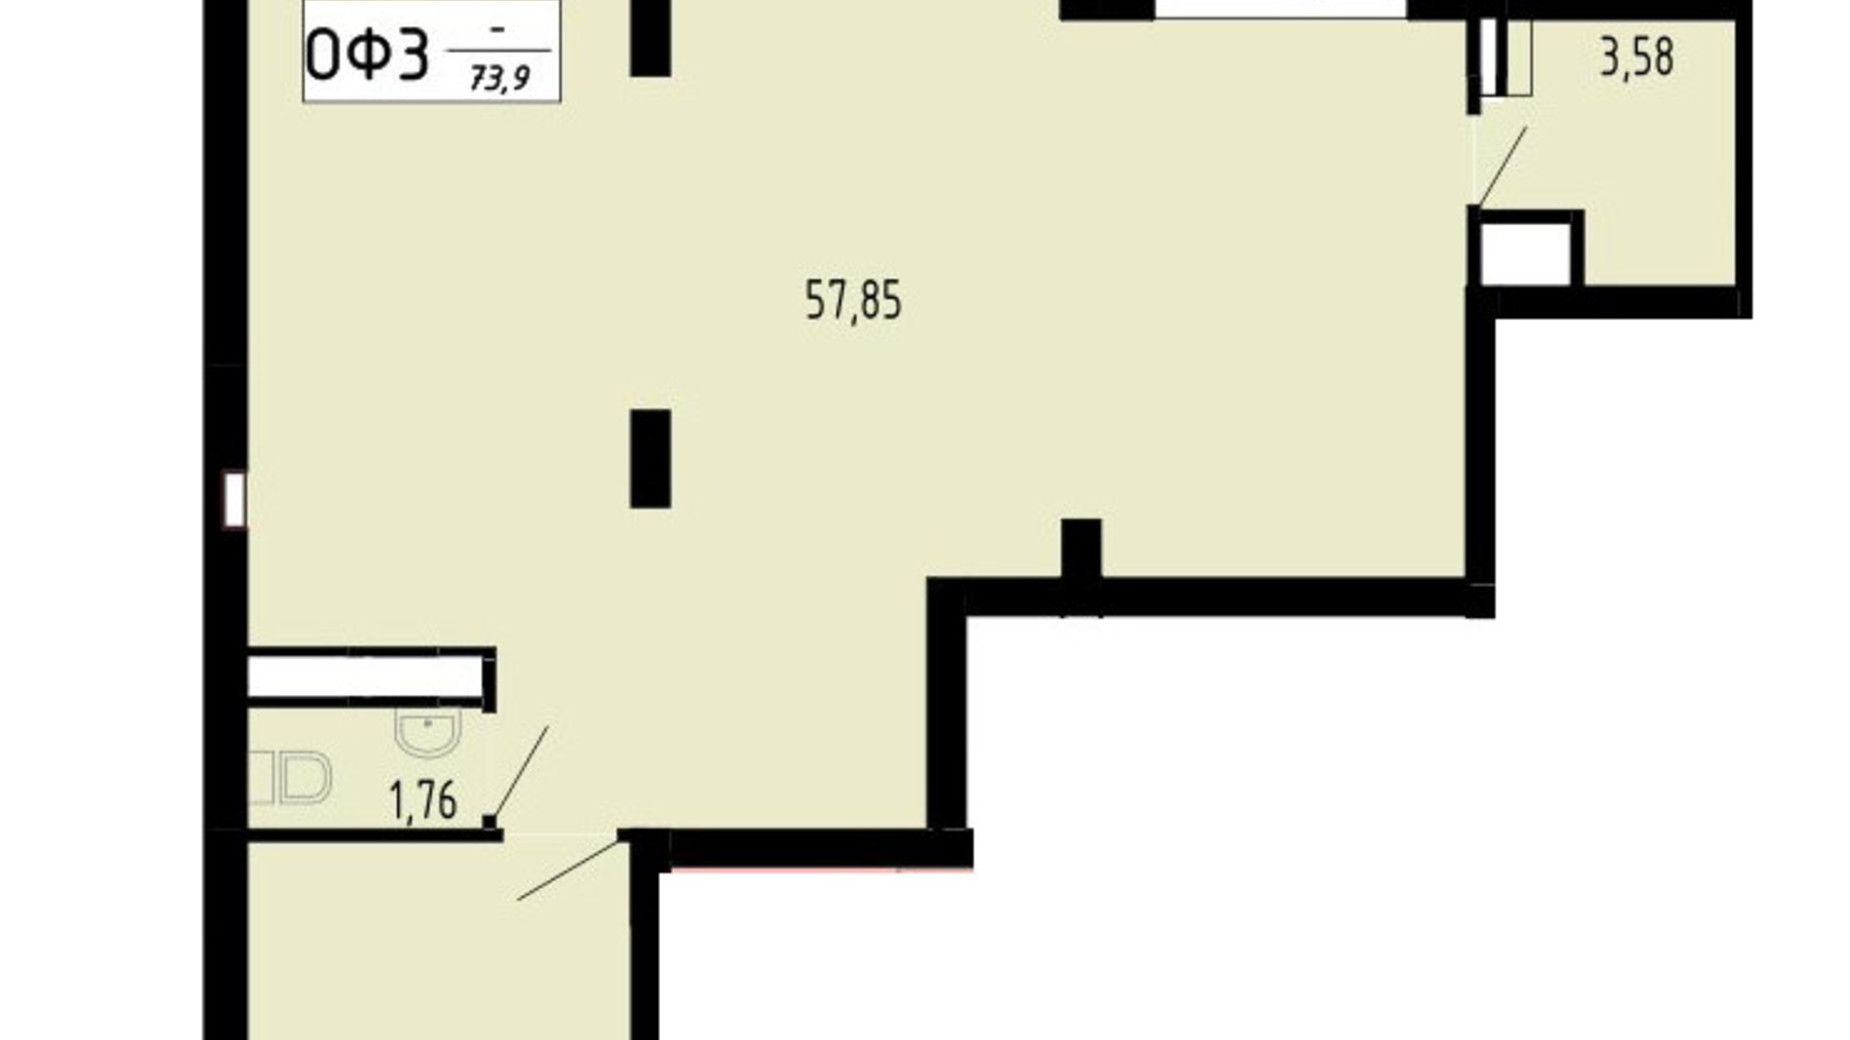 Планировка помещения в ЖК Академический 73.9 м², фото 597468